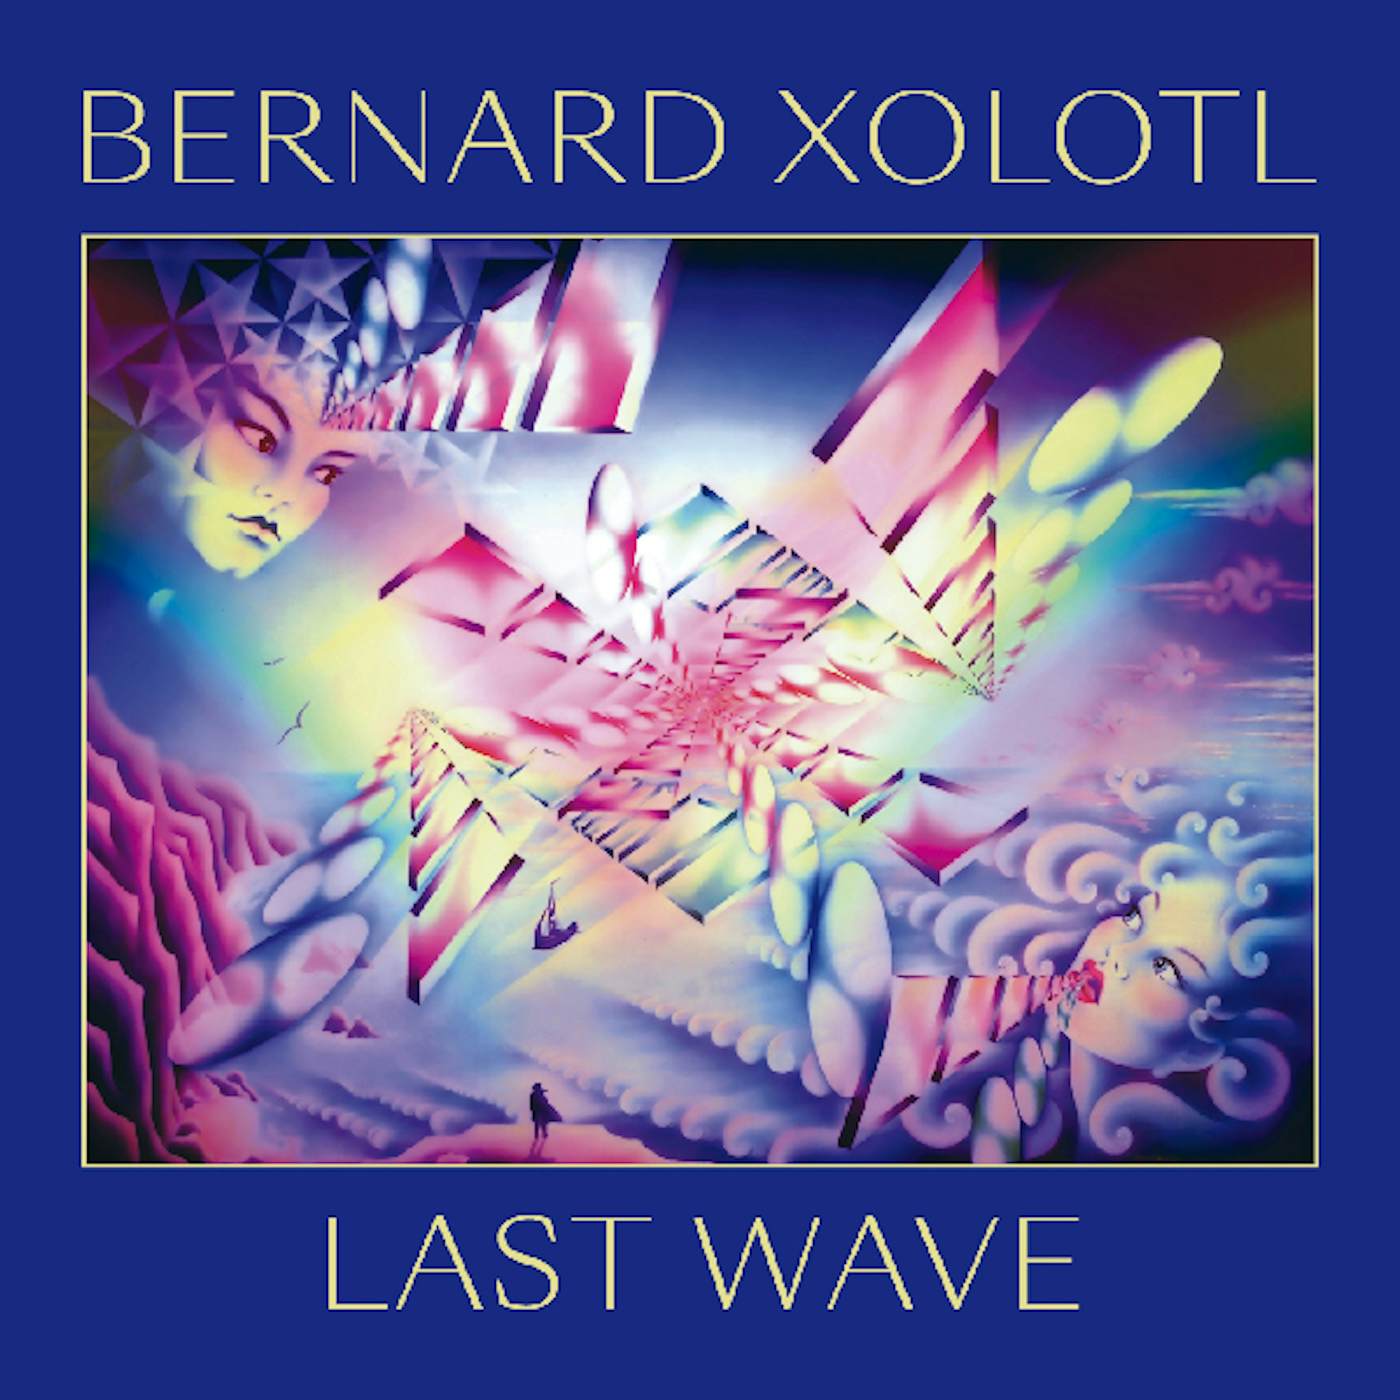 Bernard Xolotl LAST WAVE CD